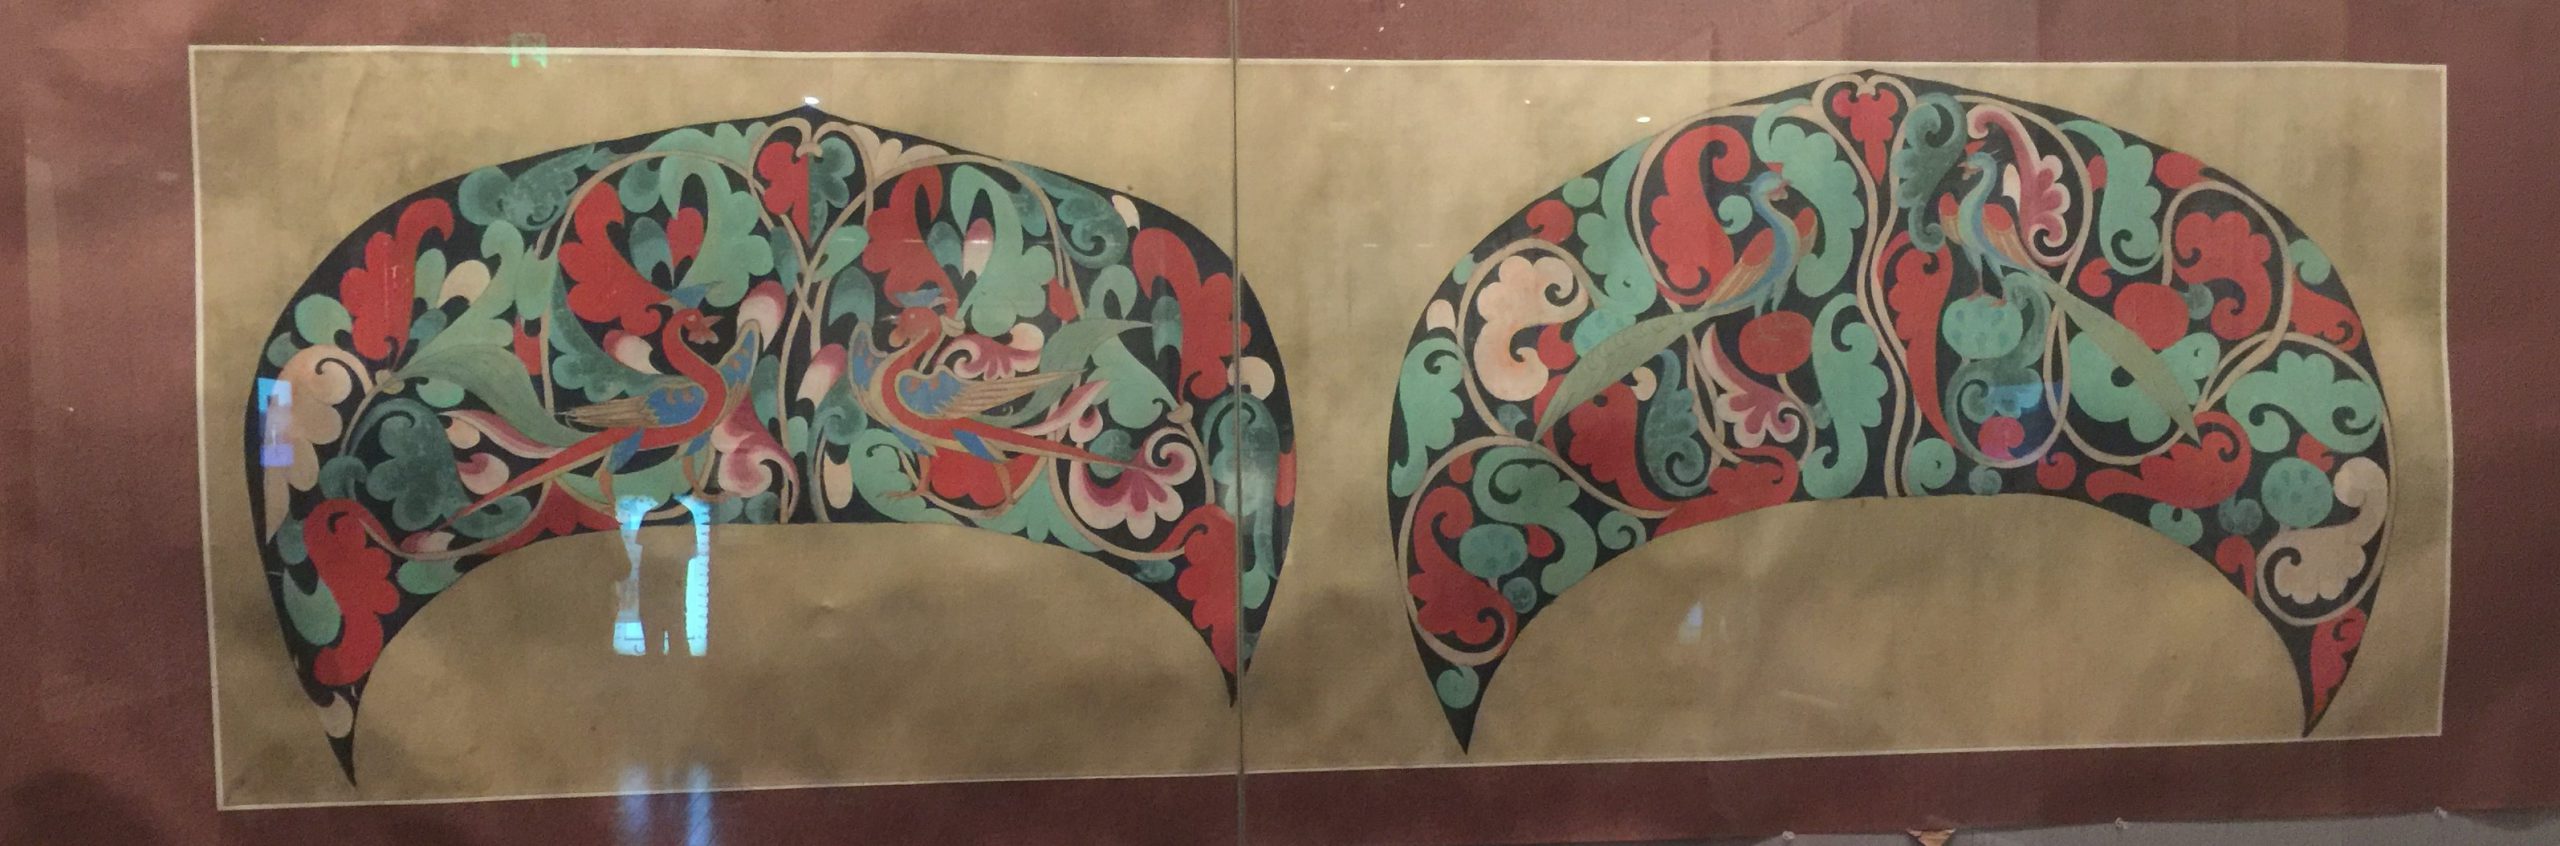 臨摹北魏図案図軸-張大千芸術館-四川博物院-成都